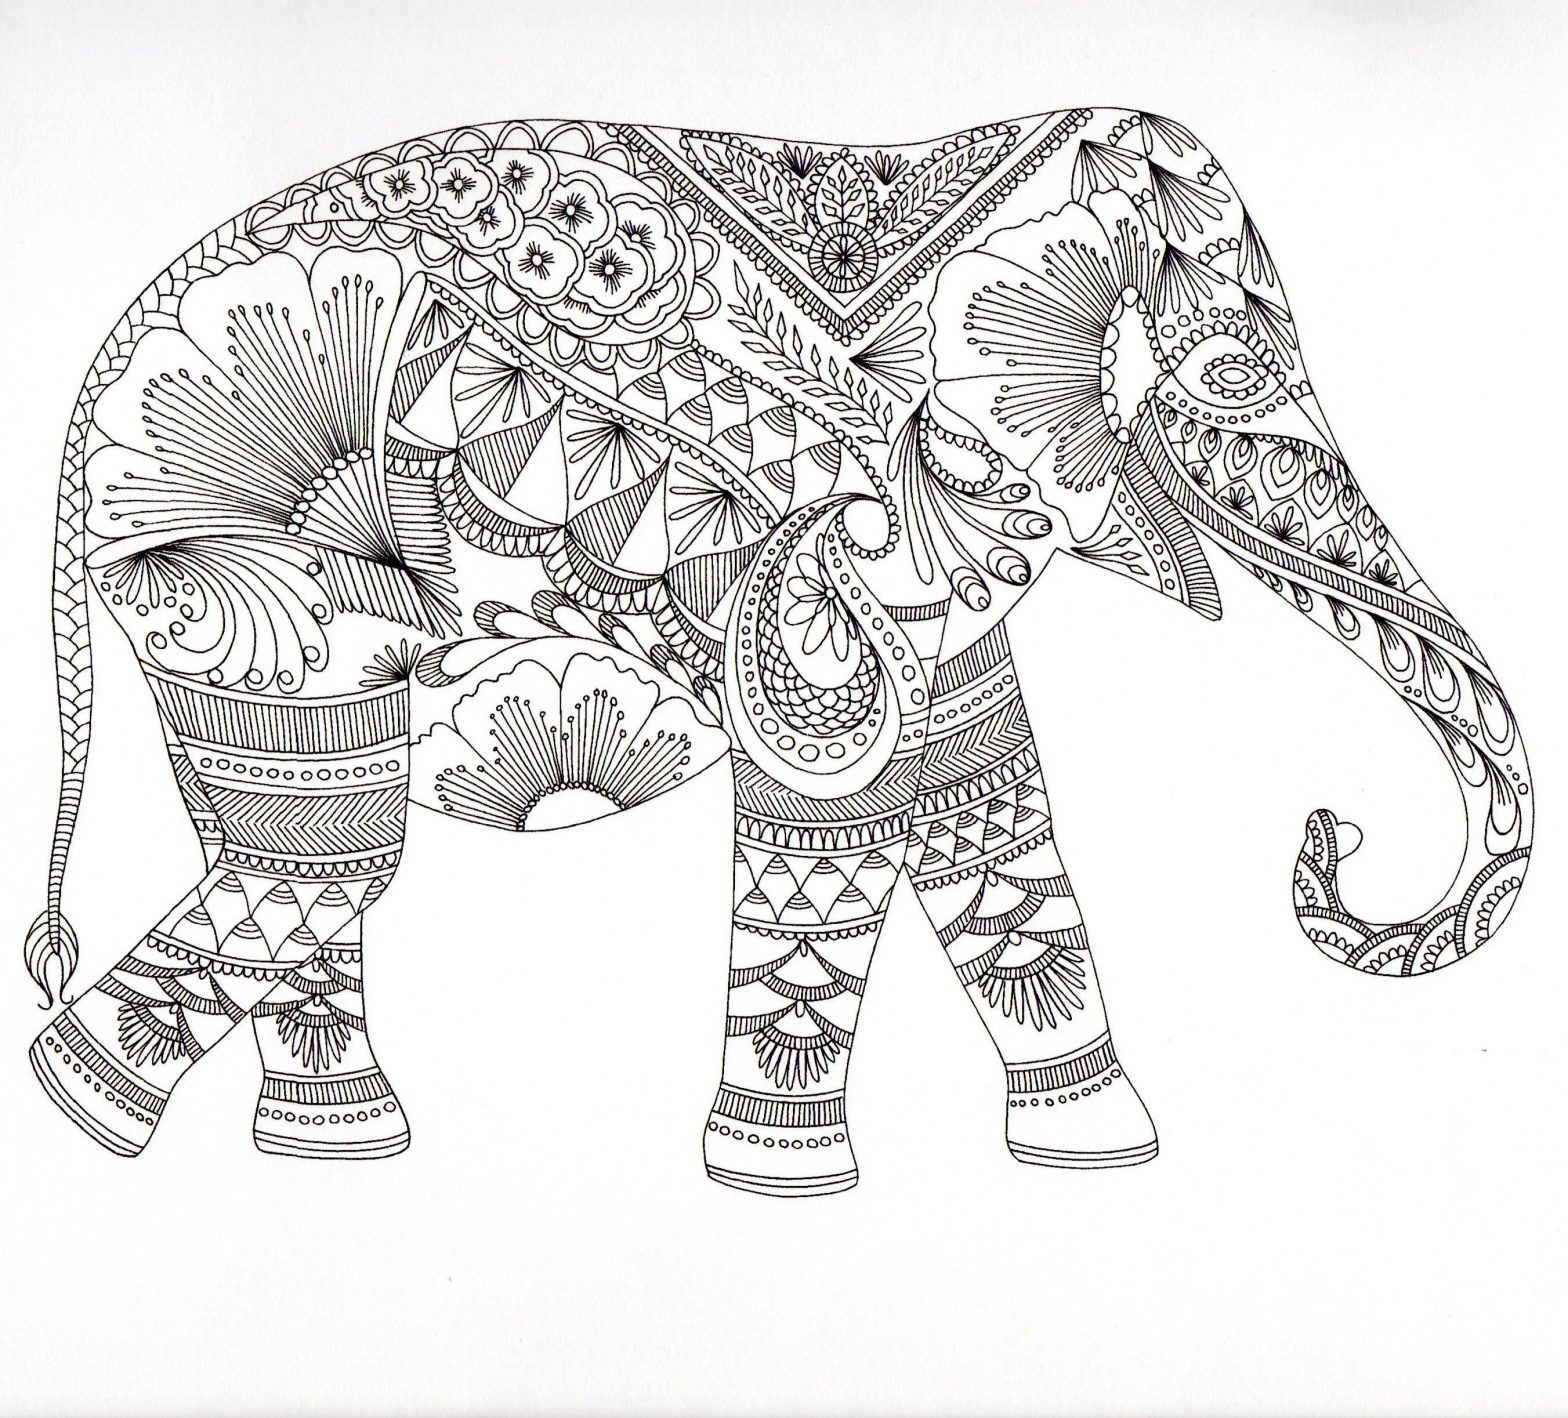 Раскраска животные слон с узорами и хоботом (слон, узоры, хобот)